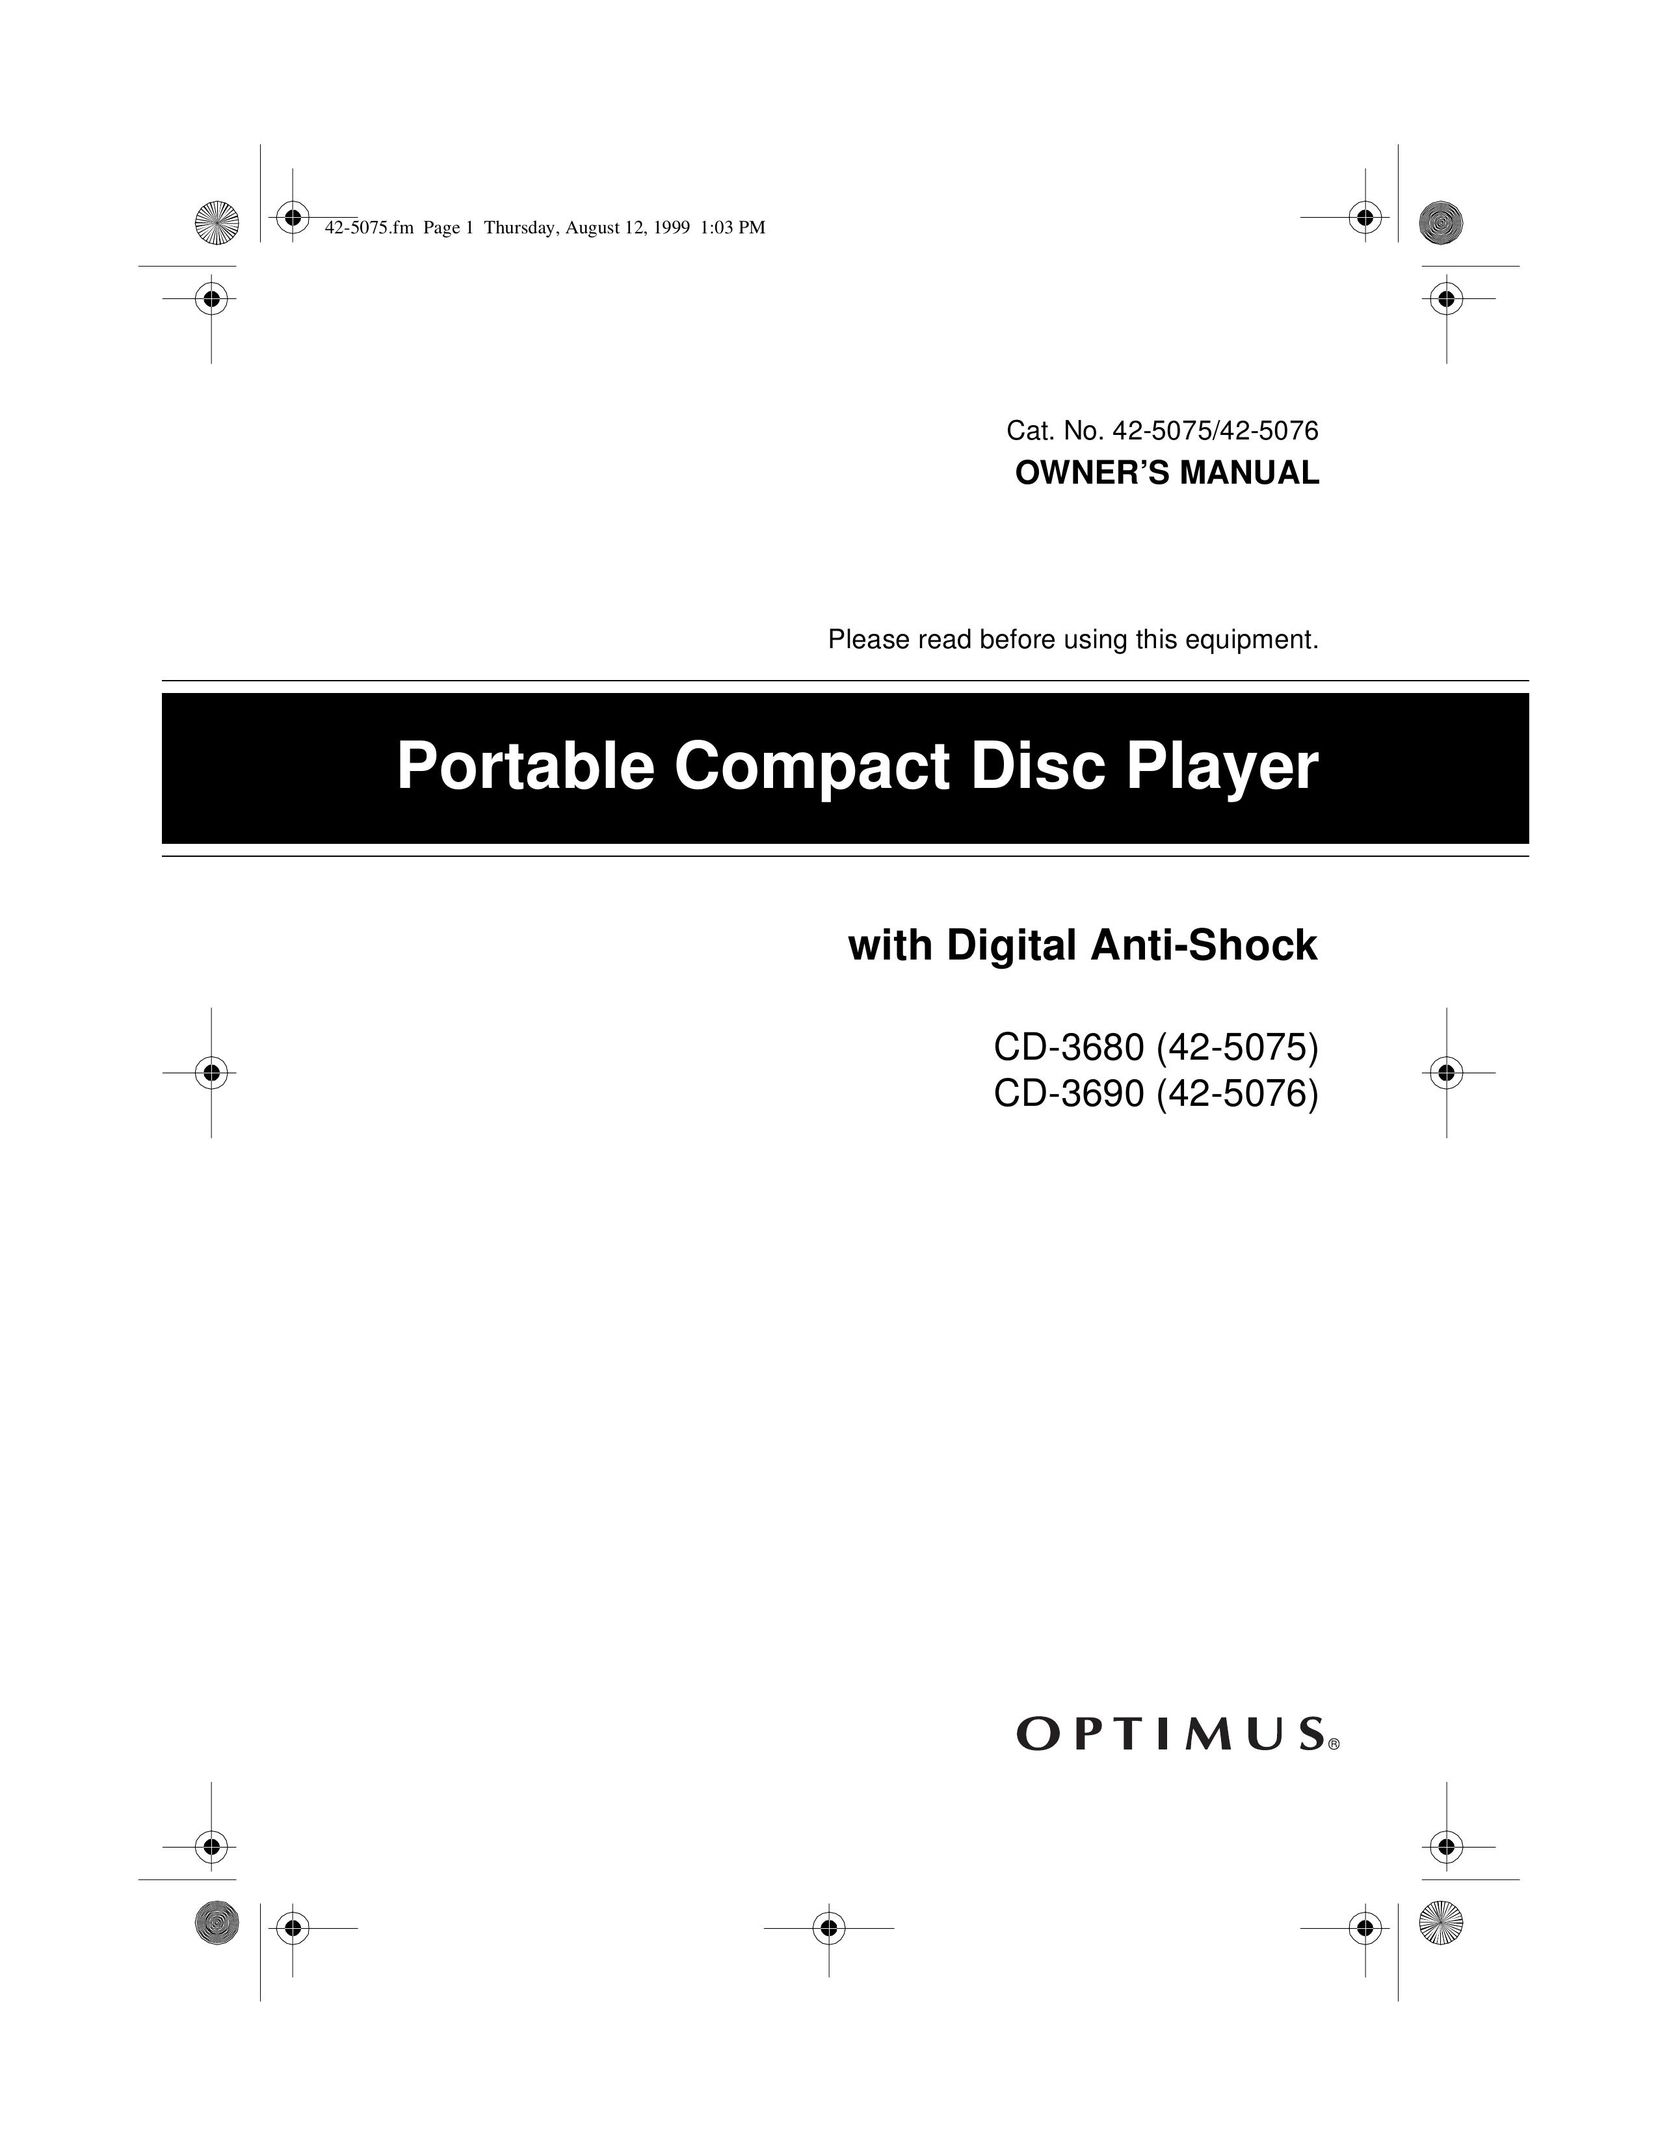 Optimus CD-3690 (42-5076) Portable CD Player User Manual